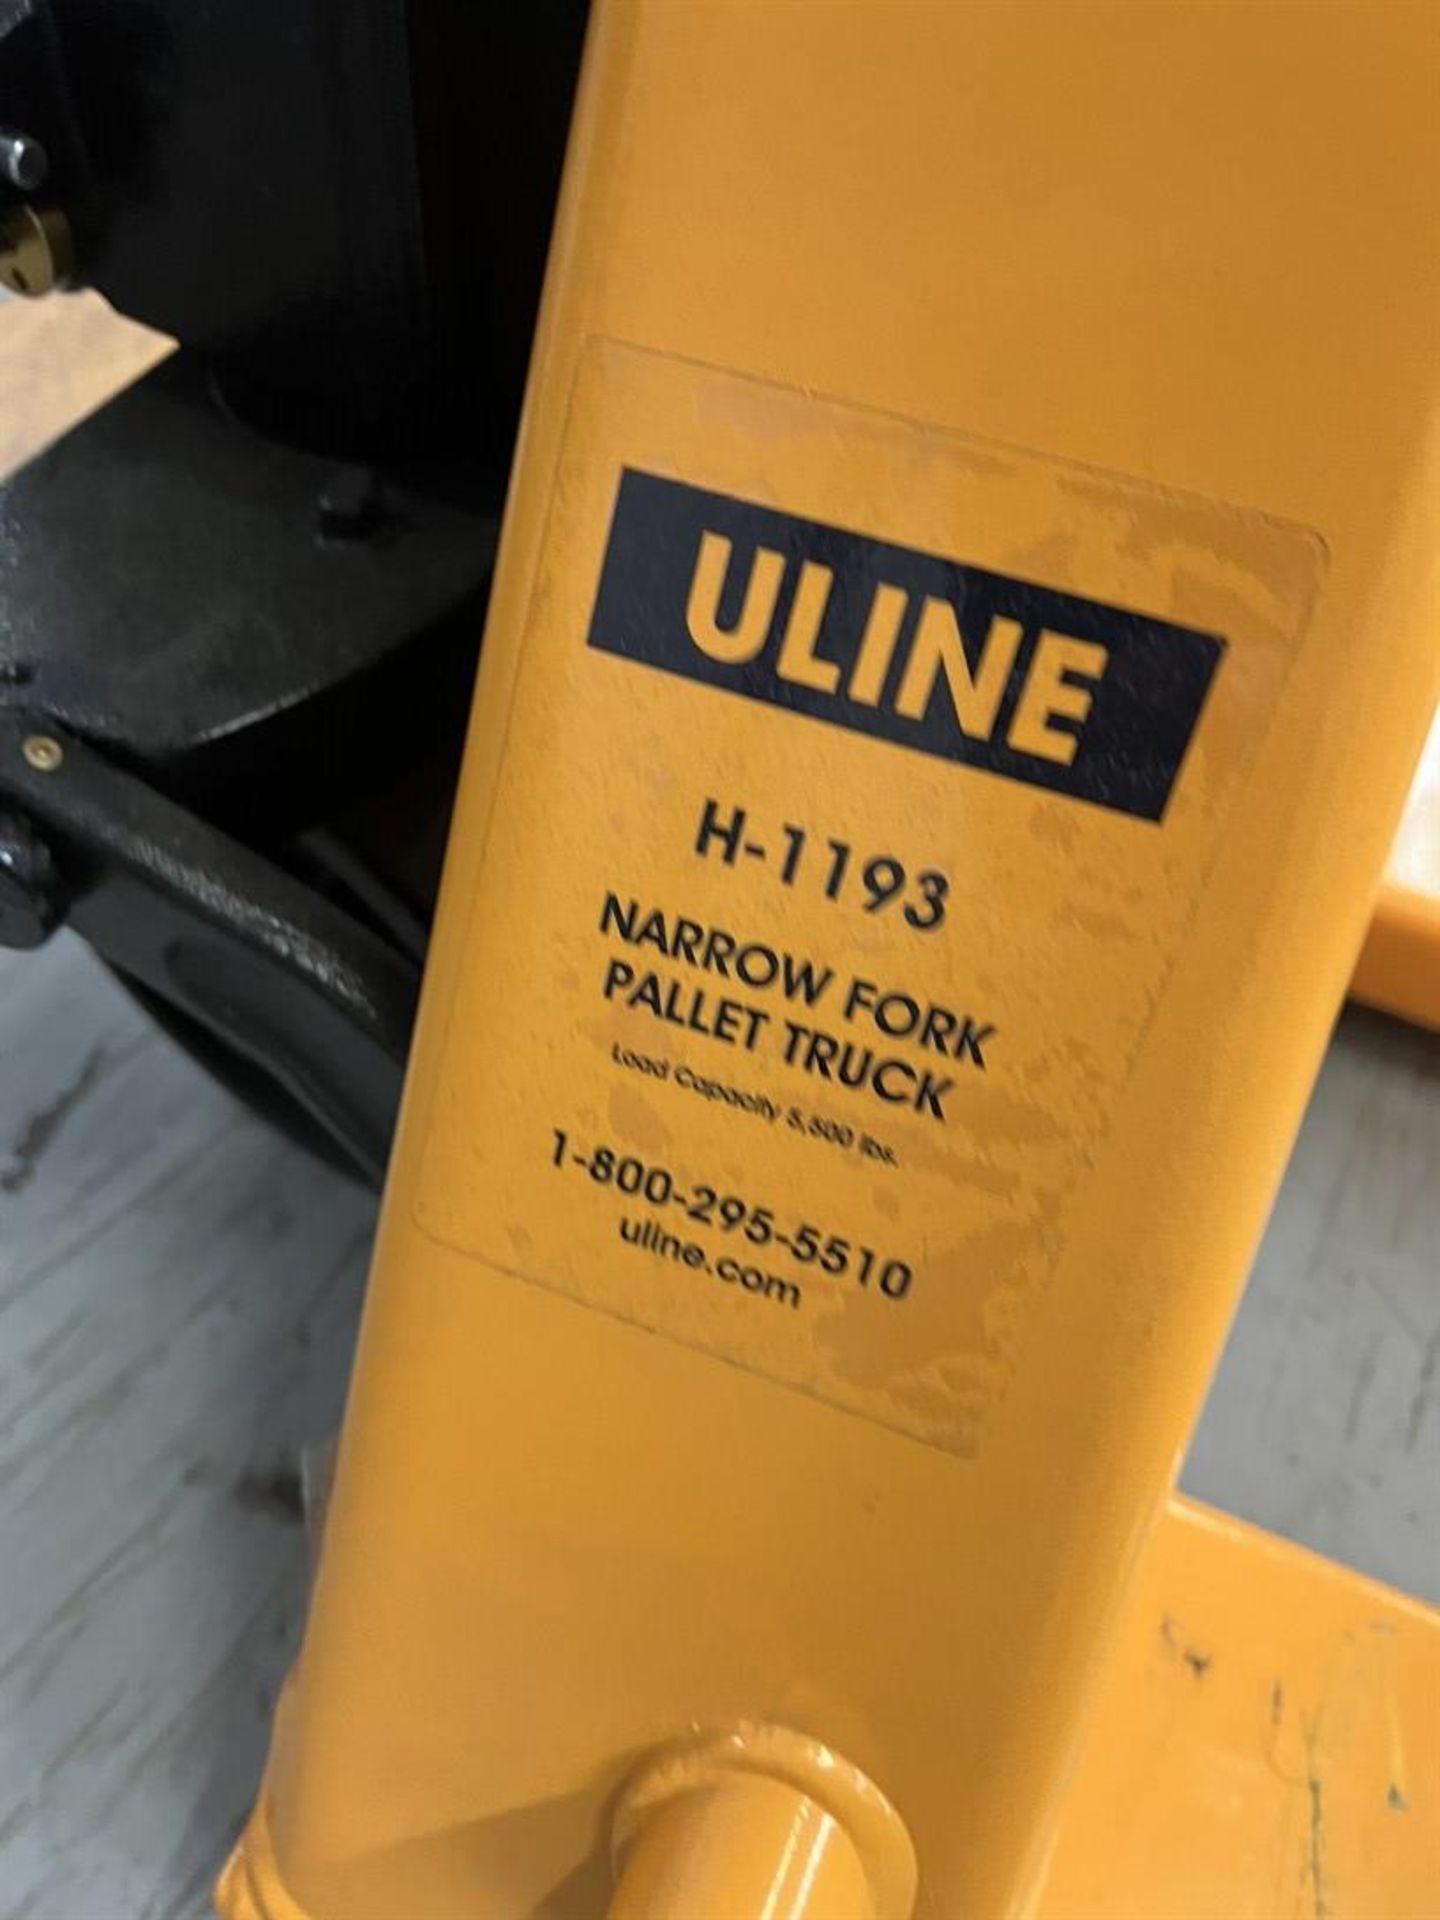 ULINE H-1193 Narrow Fork Pallet Jack, 5500 Lb. Capacity - Image 2 of 3